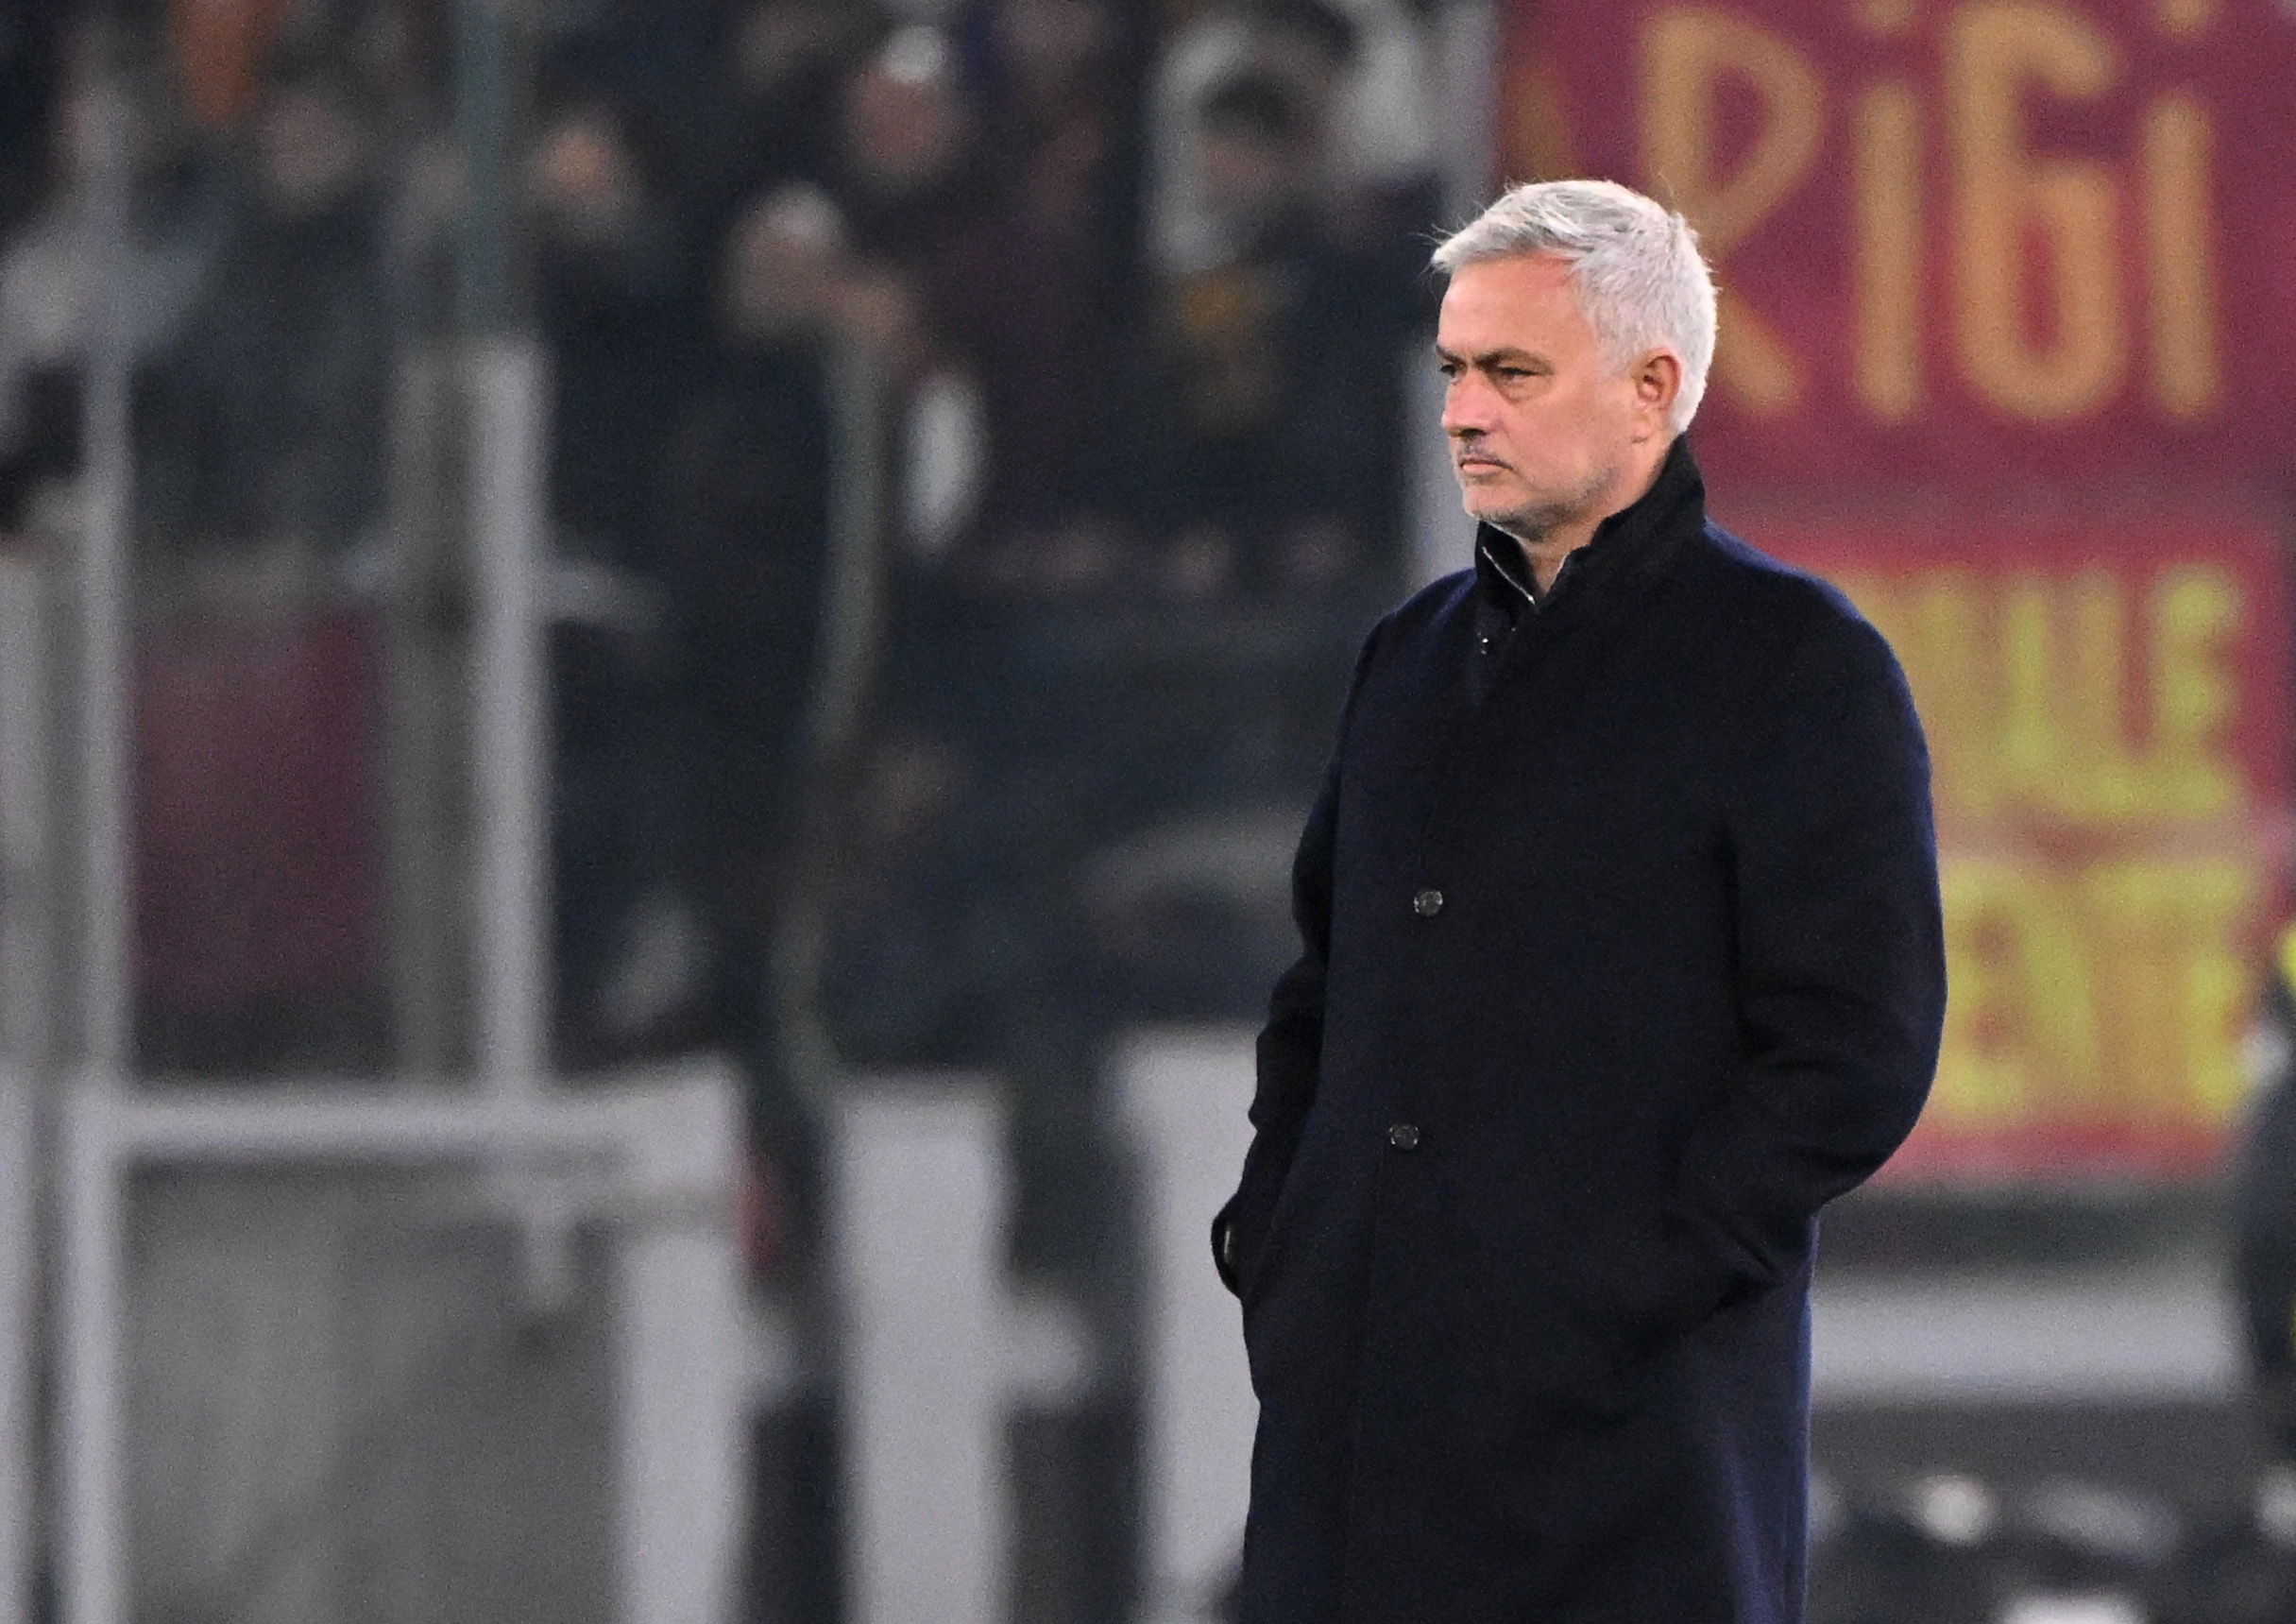 HLV Mourinho đã trở lại băng ghế chỉ đạo sau khi kháng cáo thành công